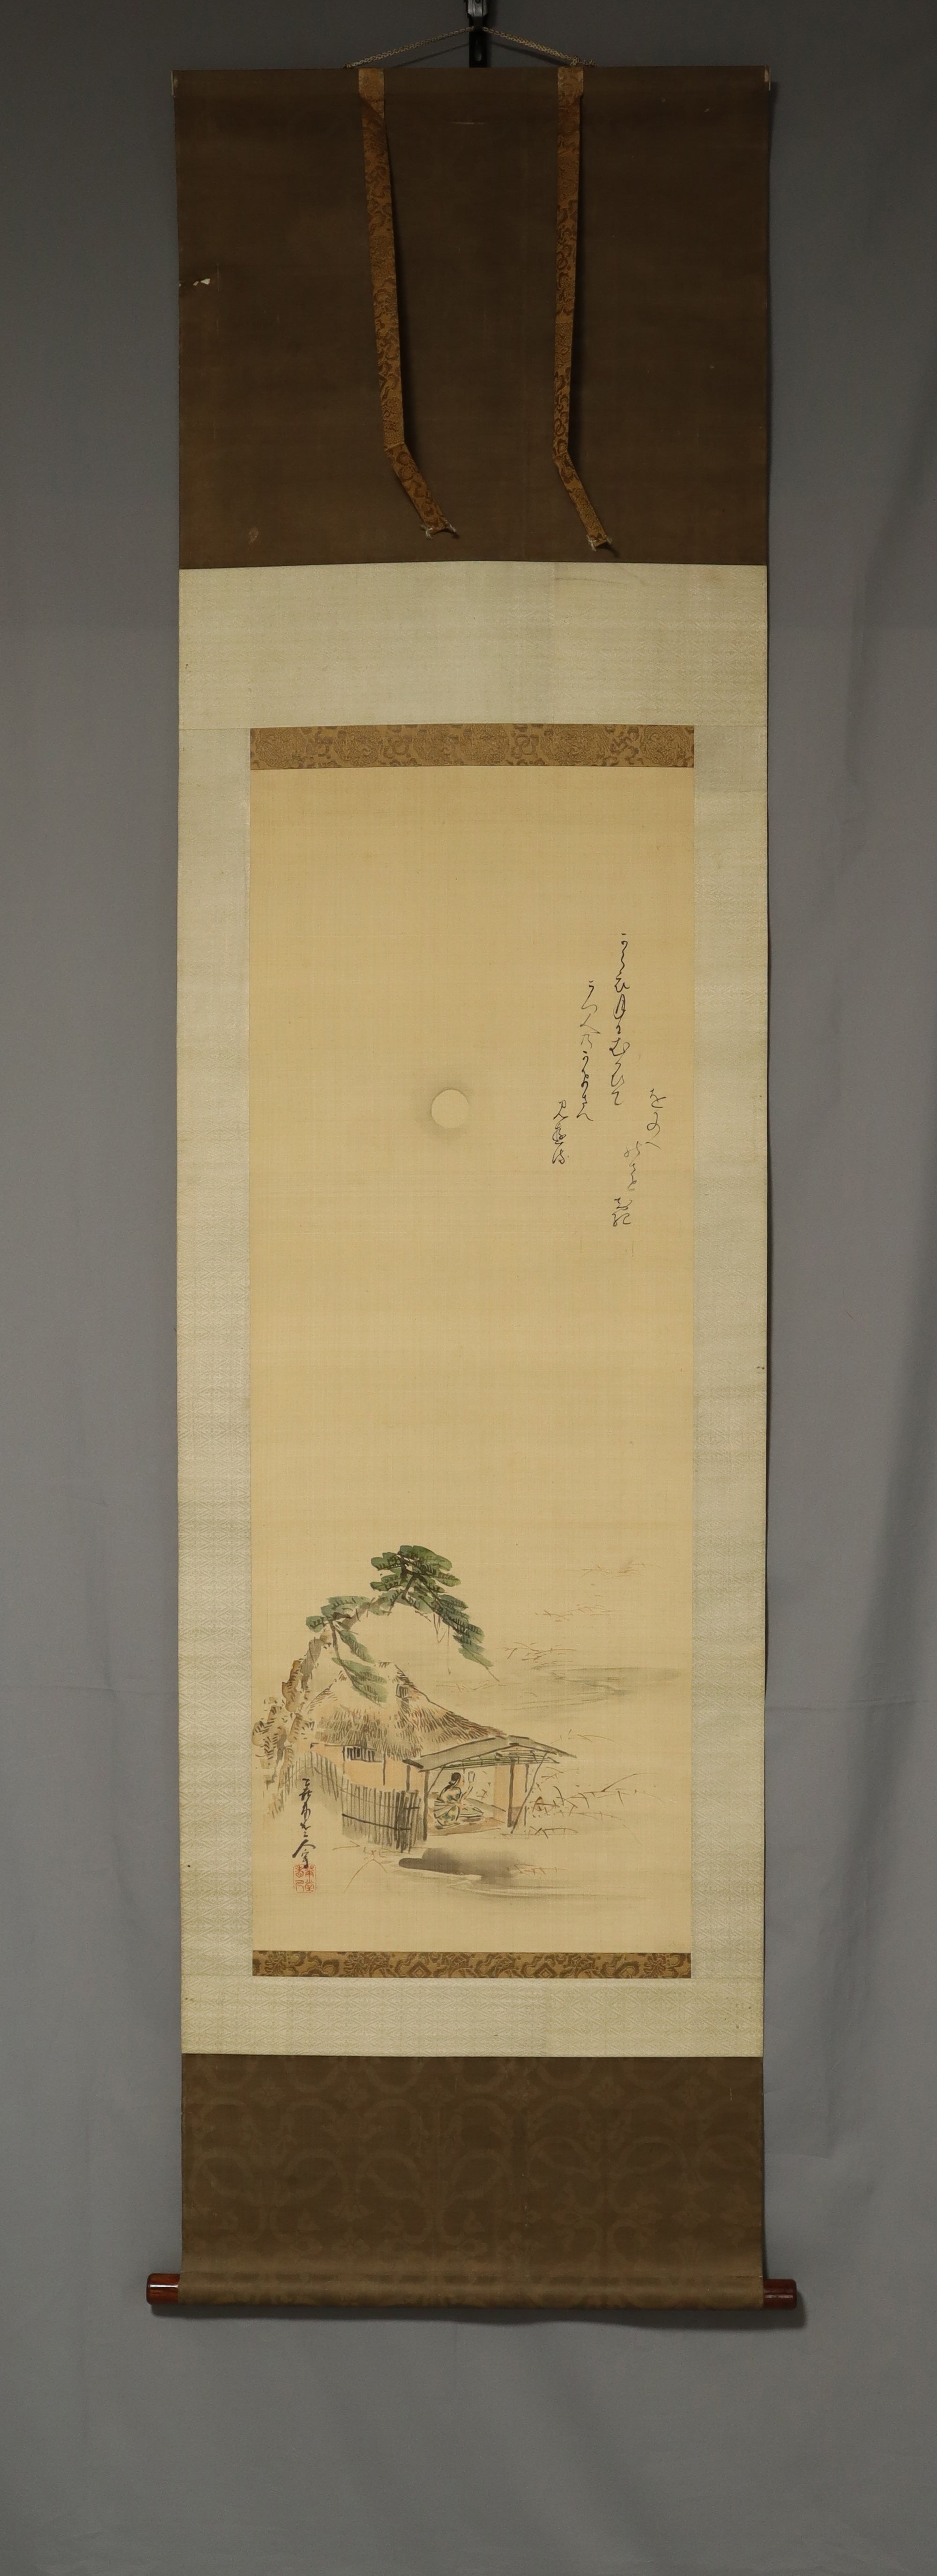 Kida Kado (1802-1879), Hatta Tomonori (1799-1873) 